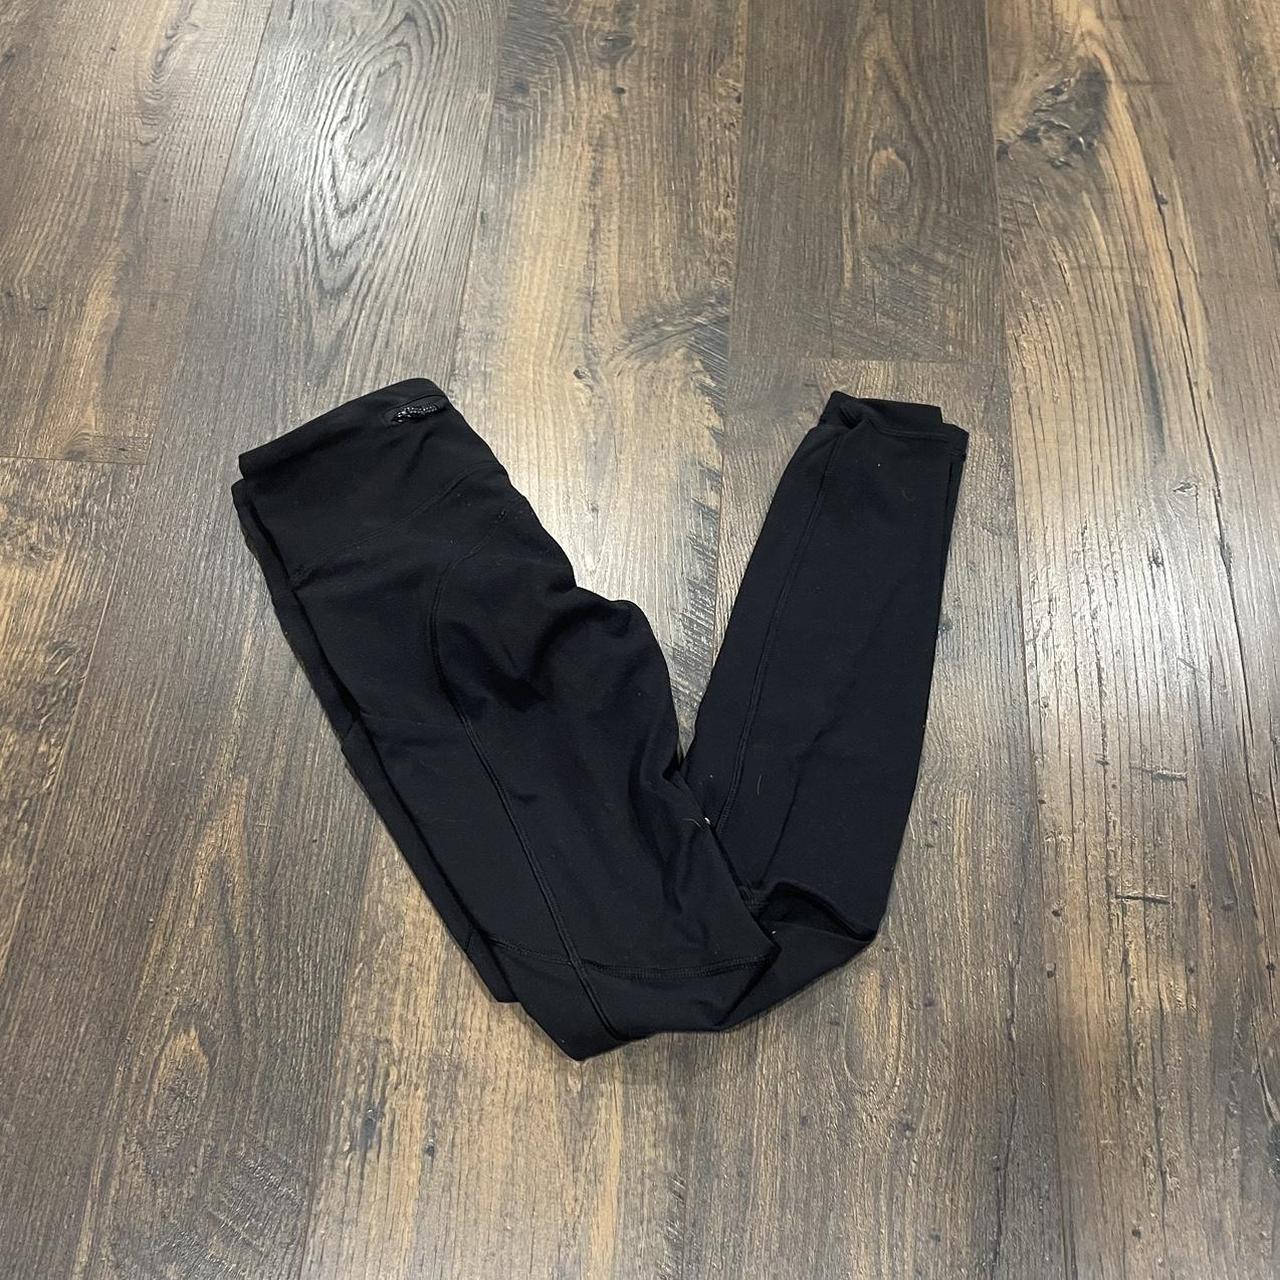 Black lululemon leggings with pockets - Depop